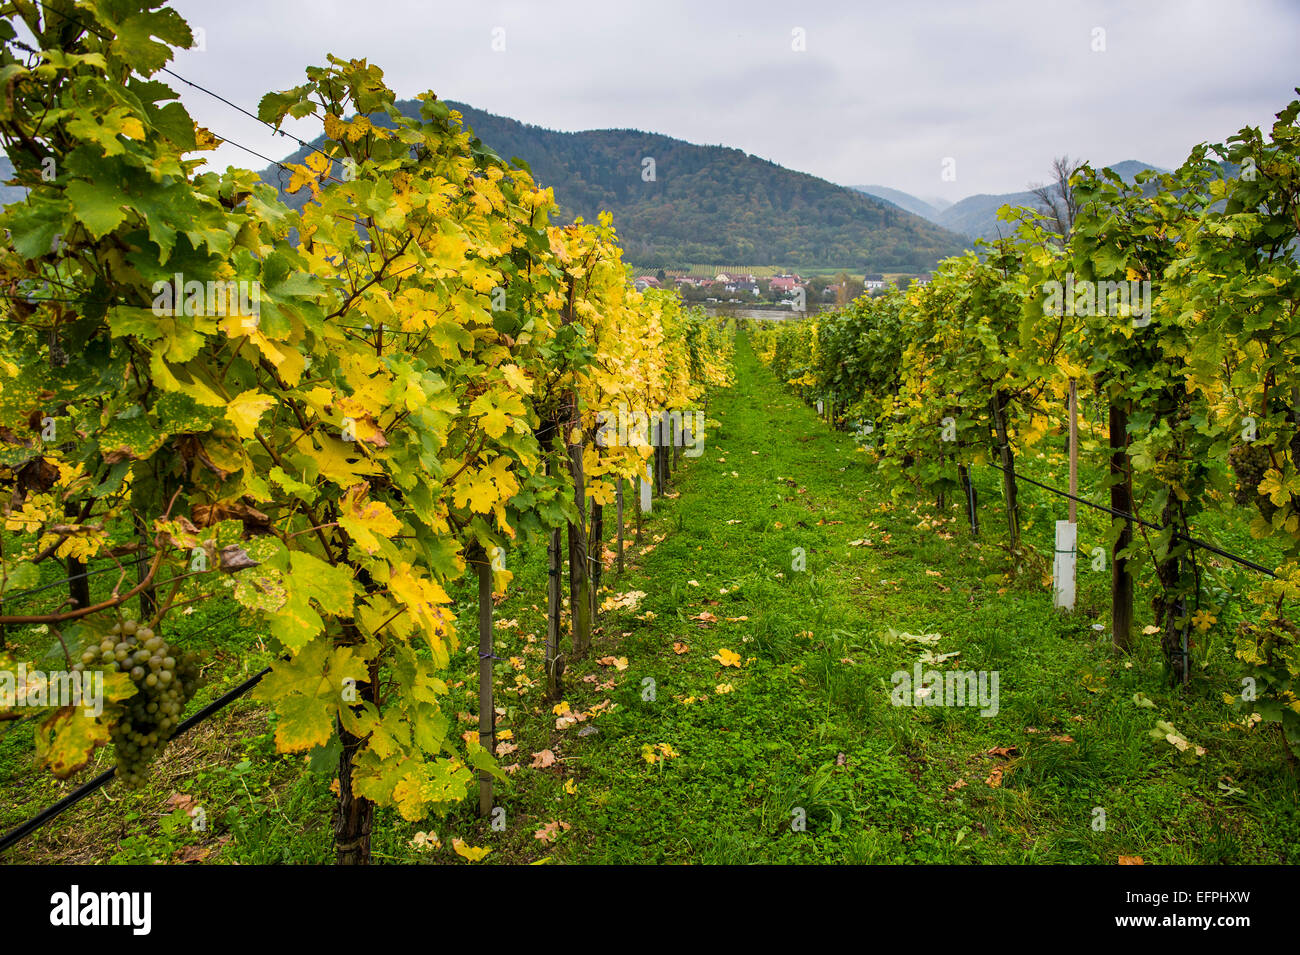 Vineyard in Duernstein, Danube, Wachau Cultural Landscape, UNESCO World Heritage Site, Austria, Europe Stock Photo